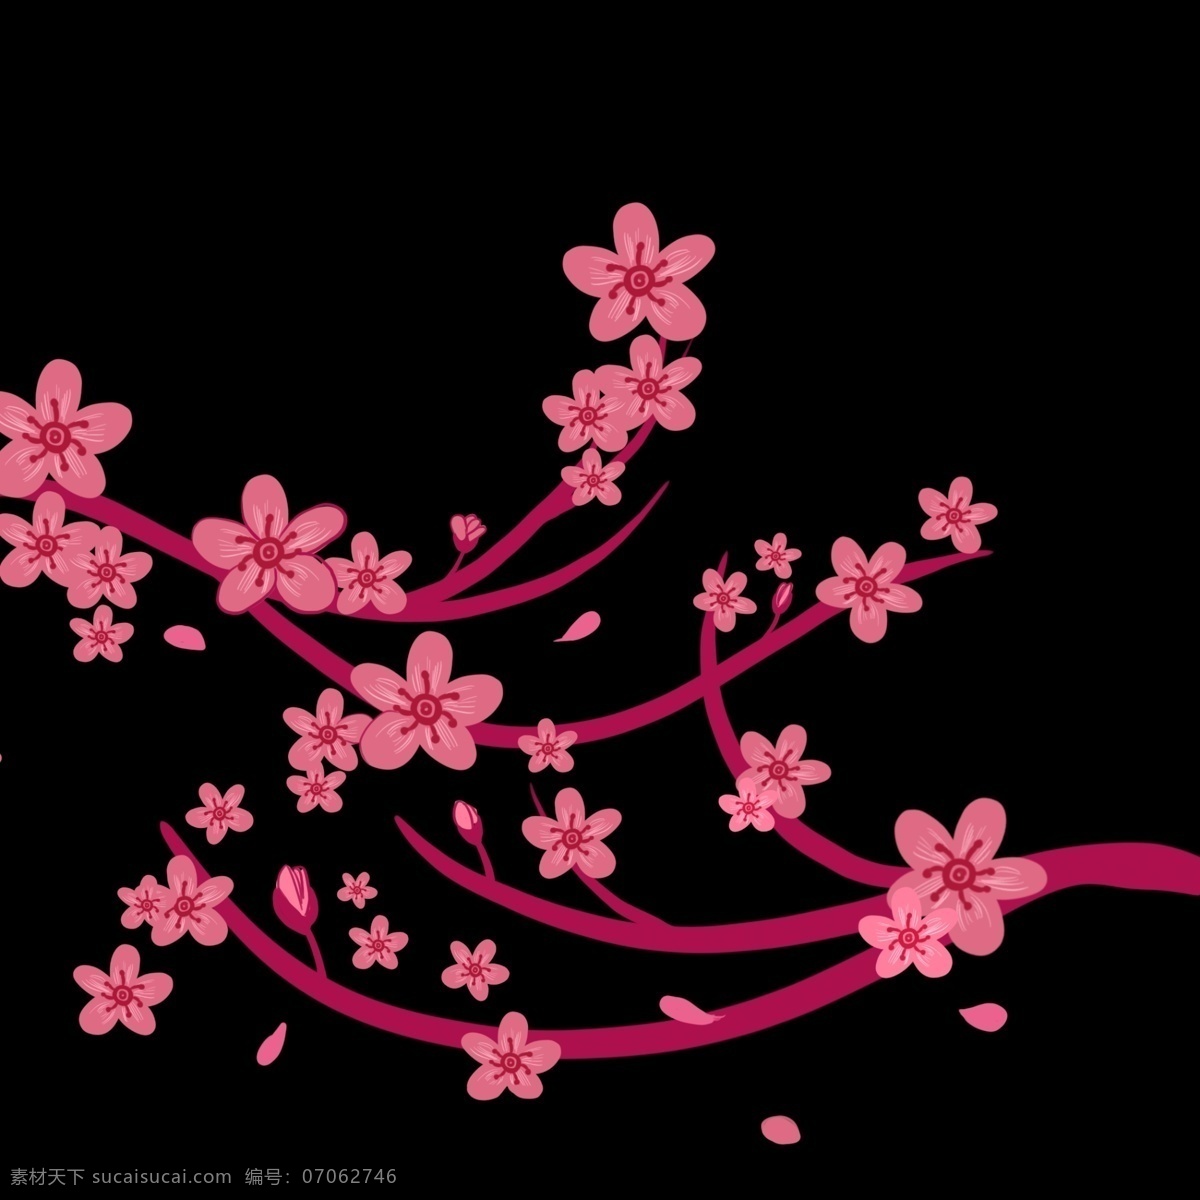 樱花 花朵 卡通 插画 卡通插画 植物插画 樱花插画 樱花花朵 装饰樱花 漂亮的樱花 粉色的樱花